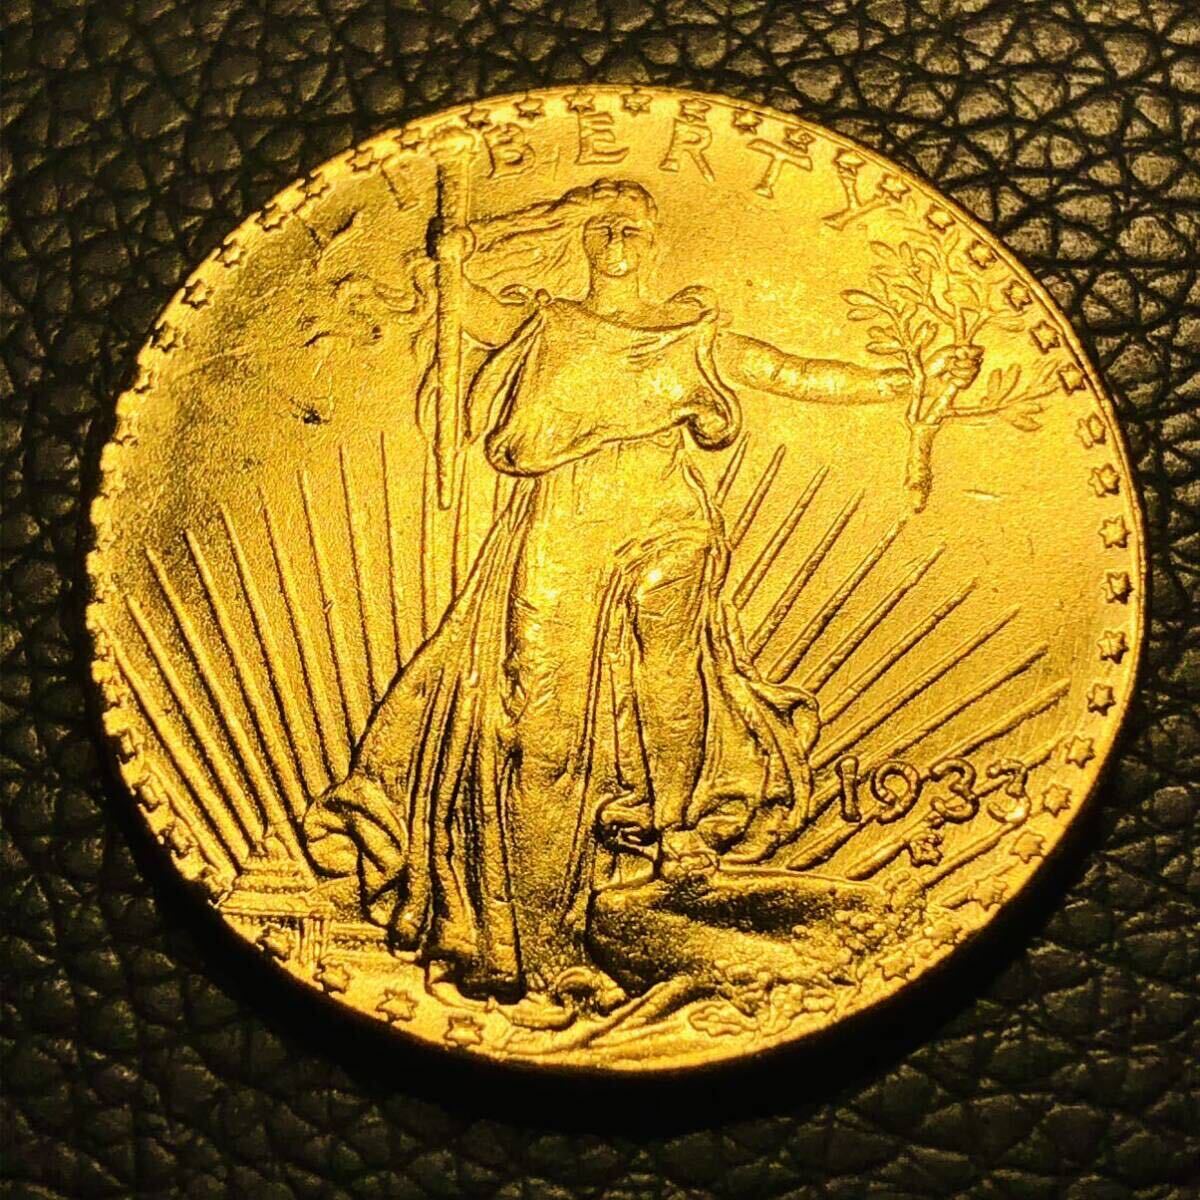  заграница   старинная монета    Америка   ходьба  ... 1933 год  ...    женщина  ... 20...  воспоминание  ...  EAGLE   большой размер  золото ... 